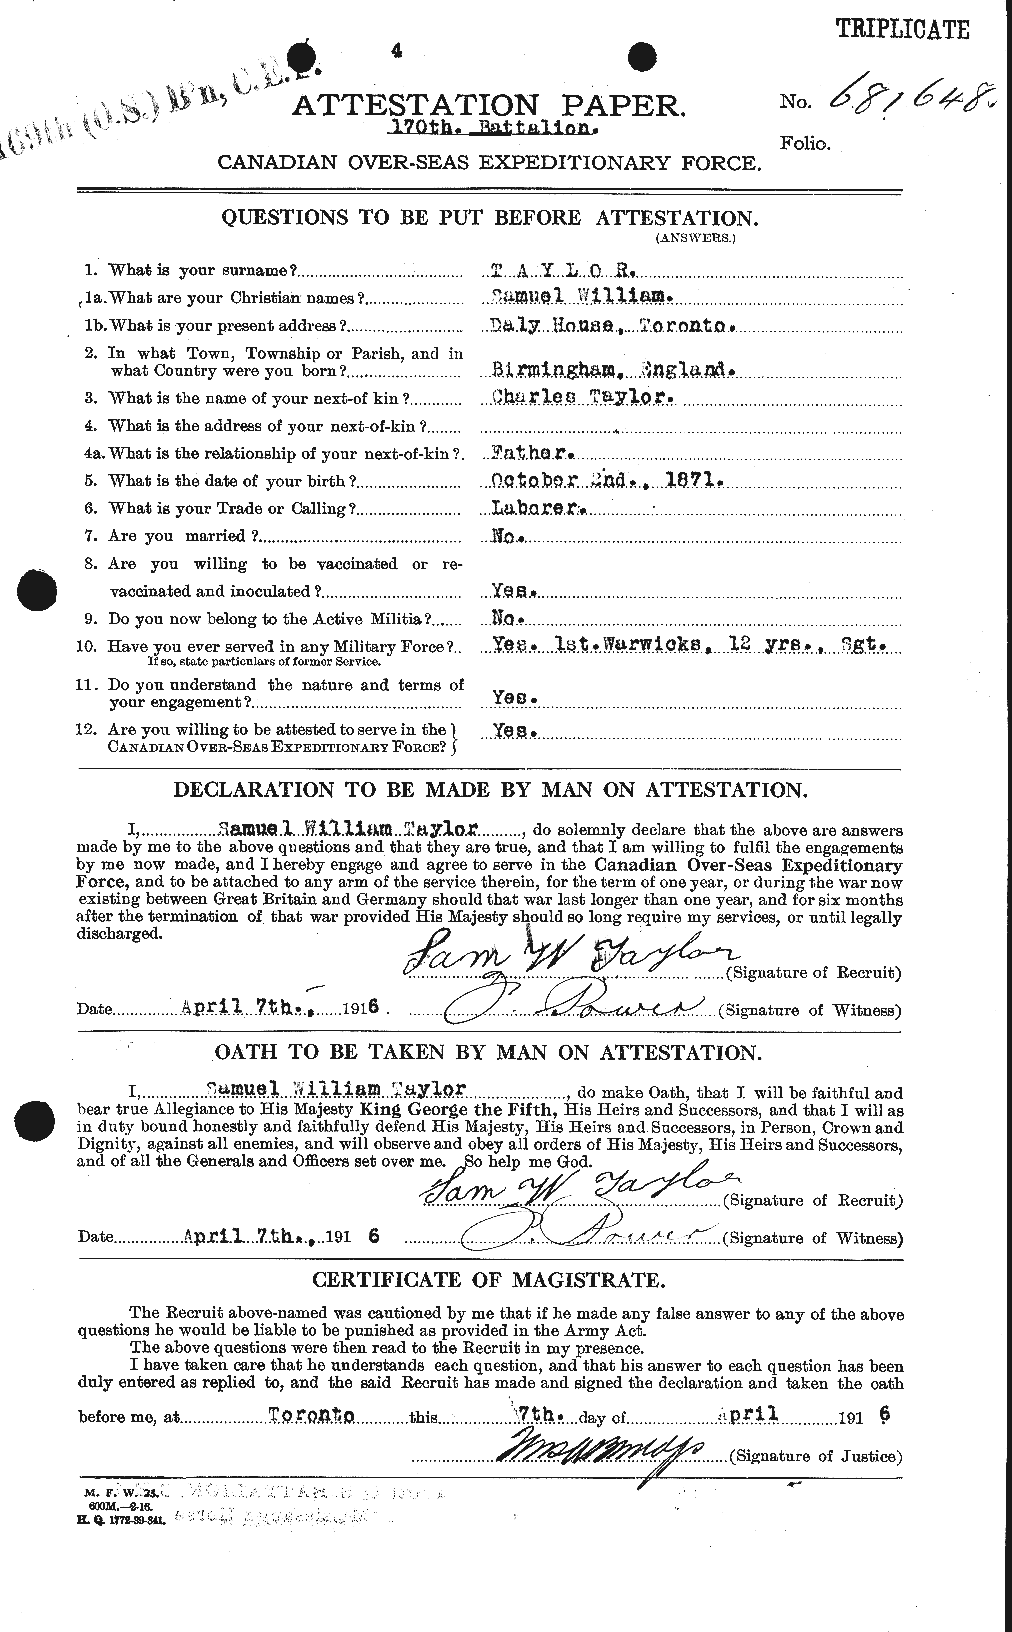 Dossiers du Personnel de la Première Guerre mondiale - CEC 627887a